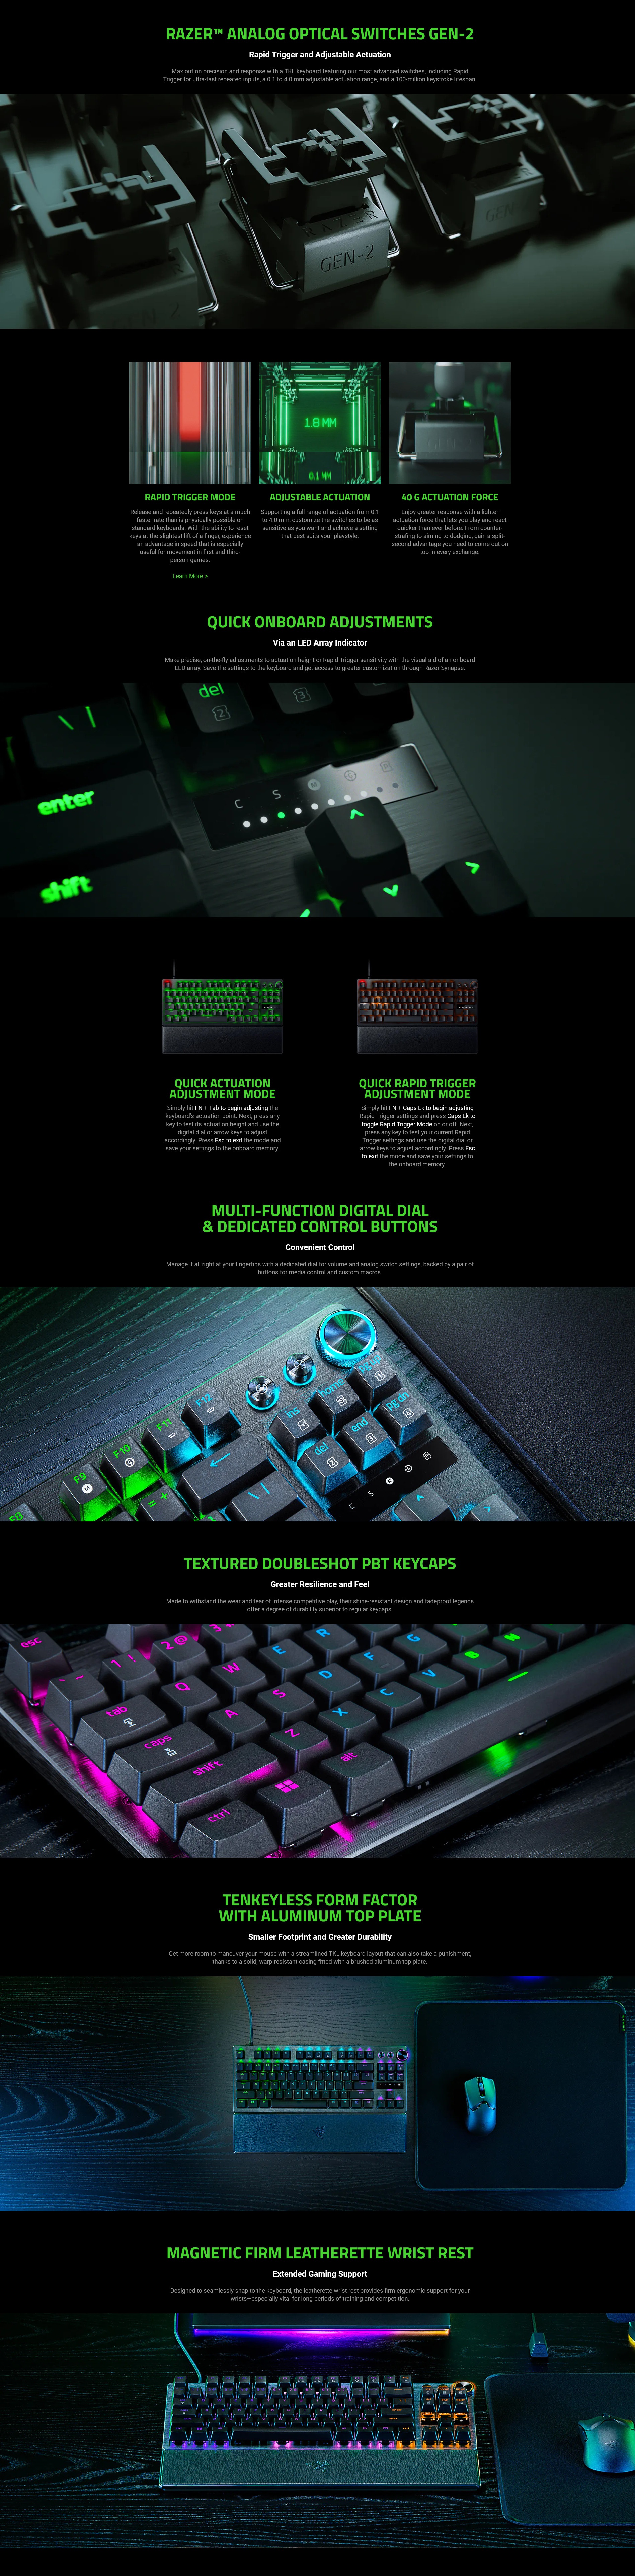 A large marketing image providing additional information about the product Razer Huntsman V3 Pro Tenkeyless - TKL Analog Optical eSports Keyboard (White) - Additional alt info not provided